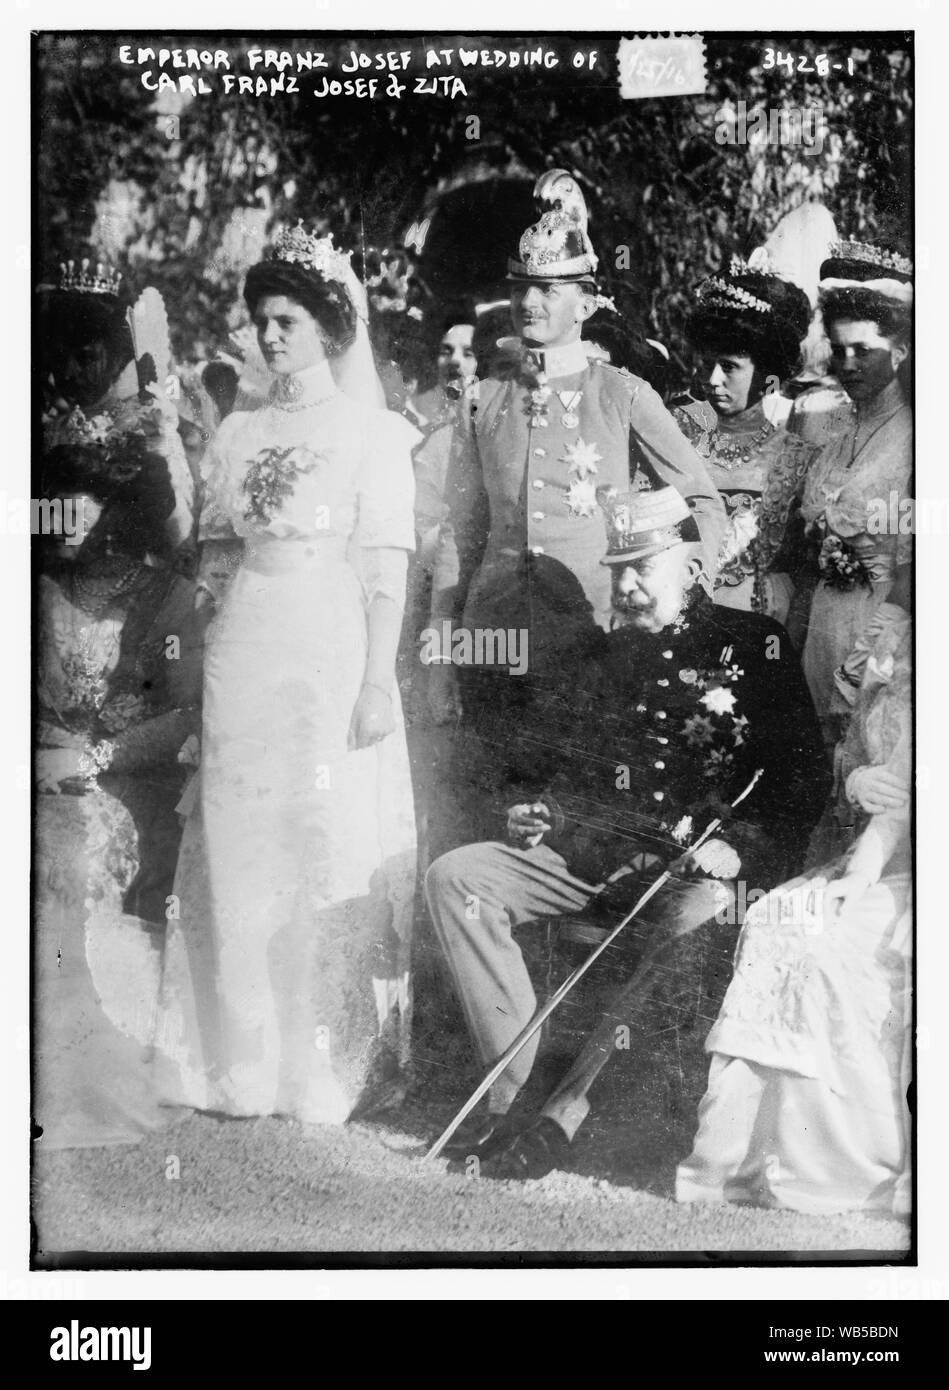 L'imperatore Franz Josef al matrimonio di Carl Franz Josef e Zita Abstract/medio: 1, negativo : vetro ; 5 x 7 in. o inferiore. Foto Stock